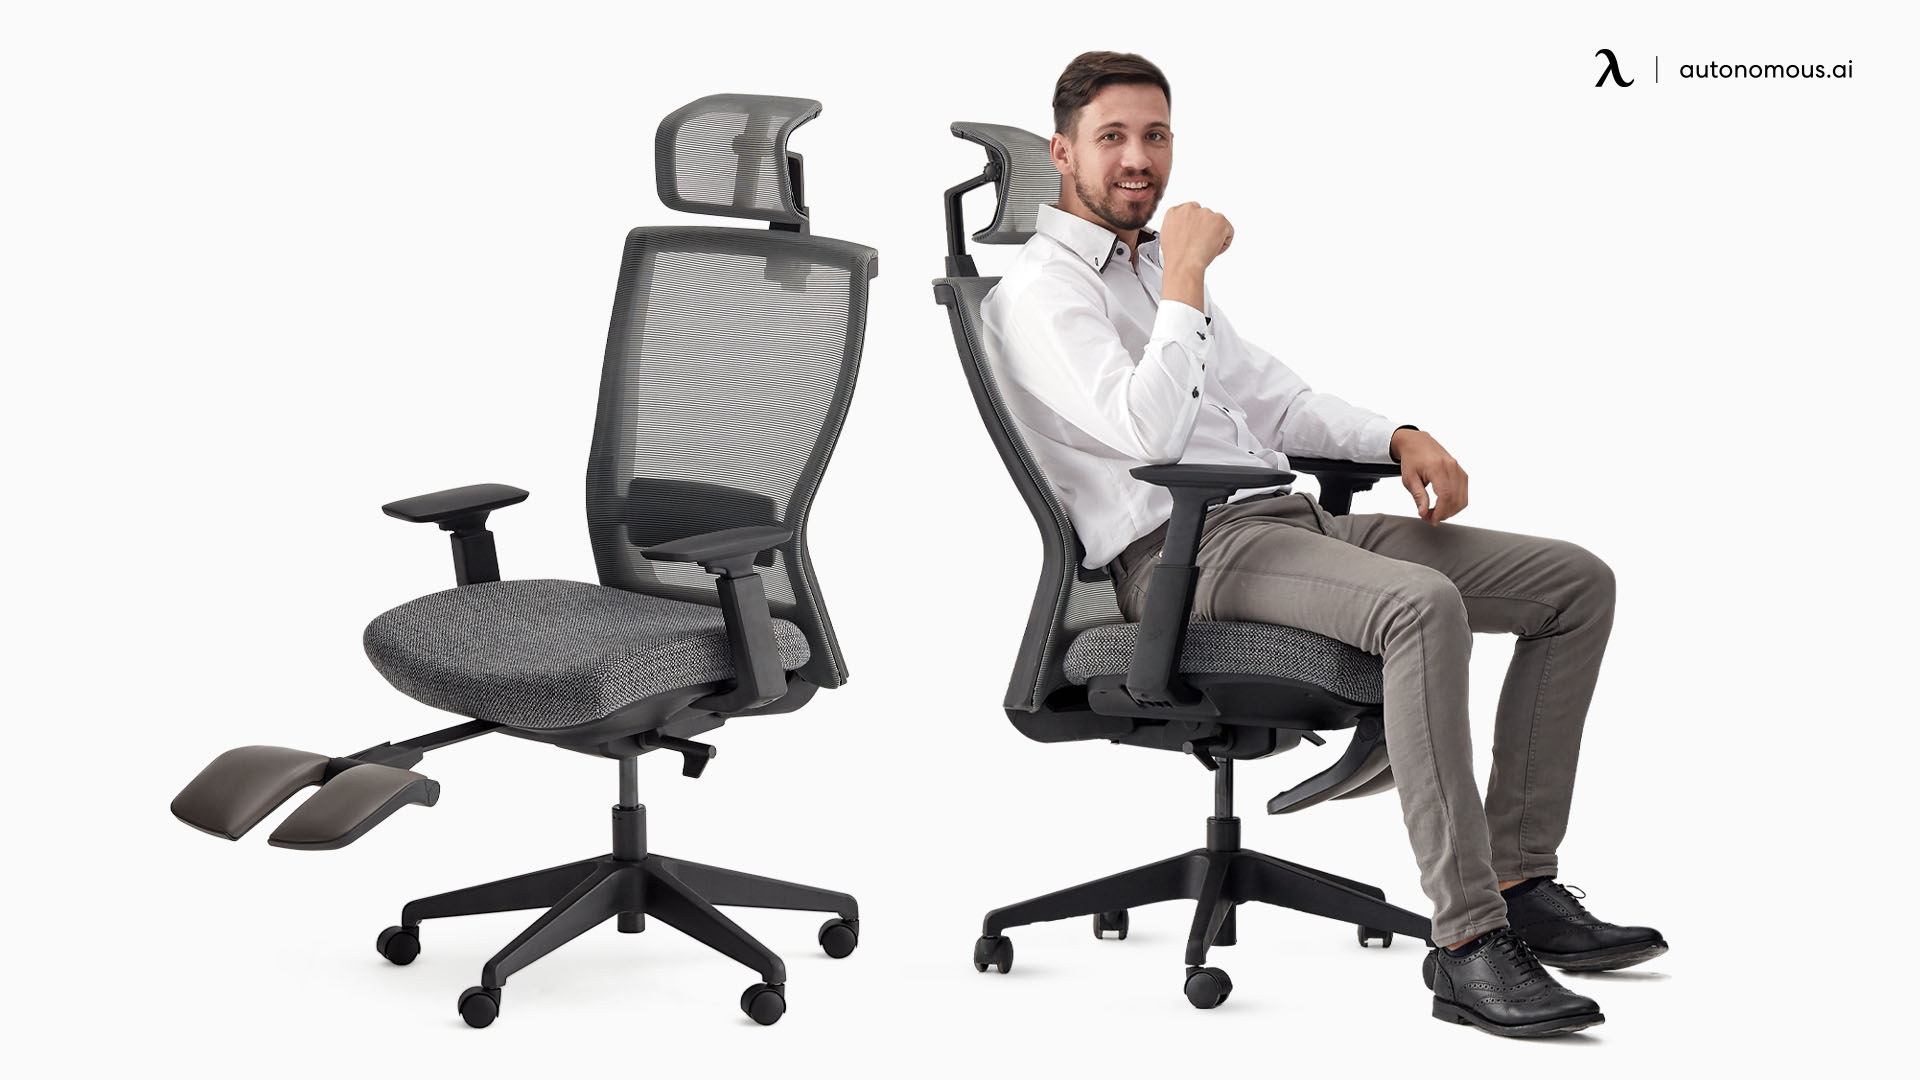 ErgoChair Plus desk chair arms